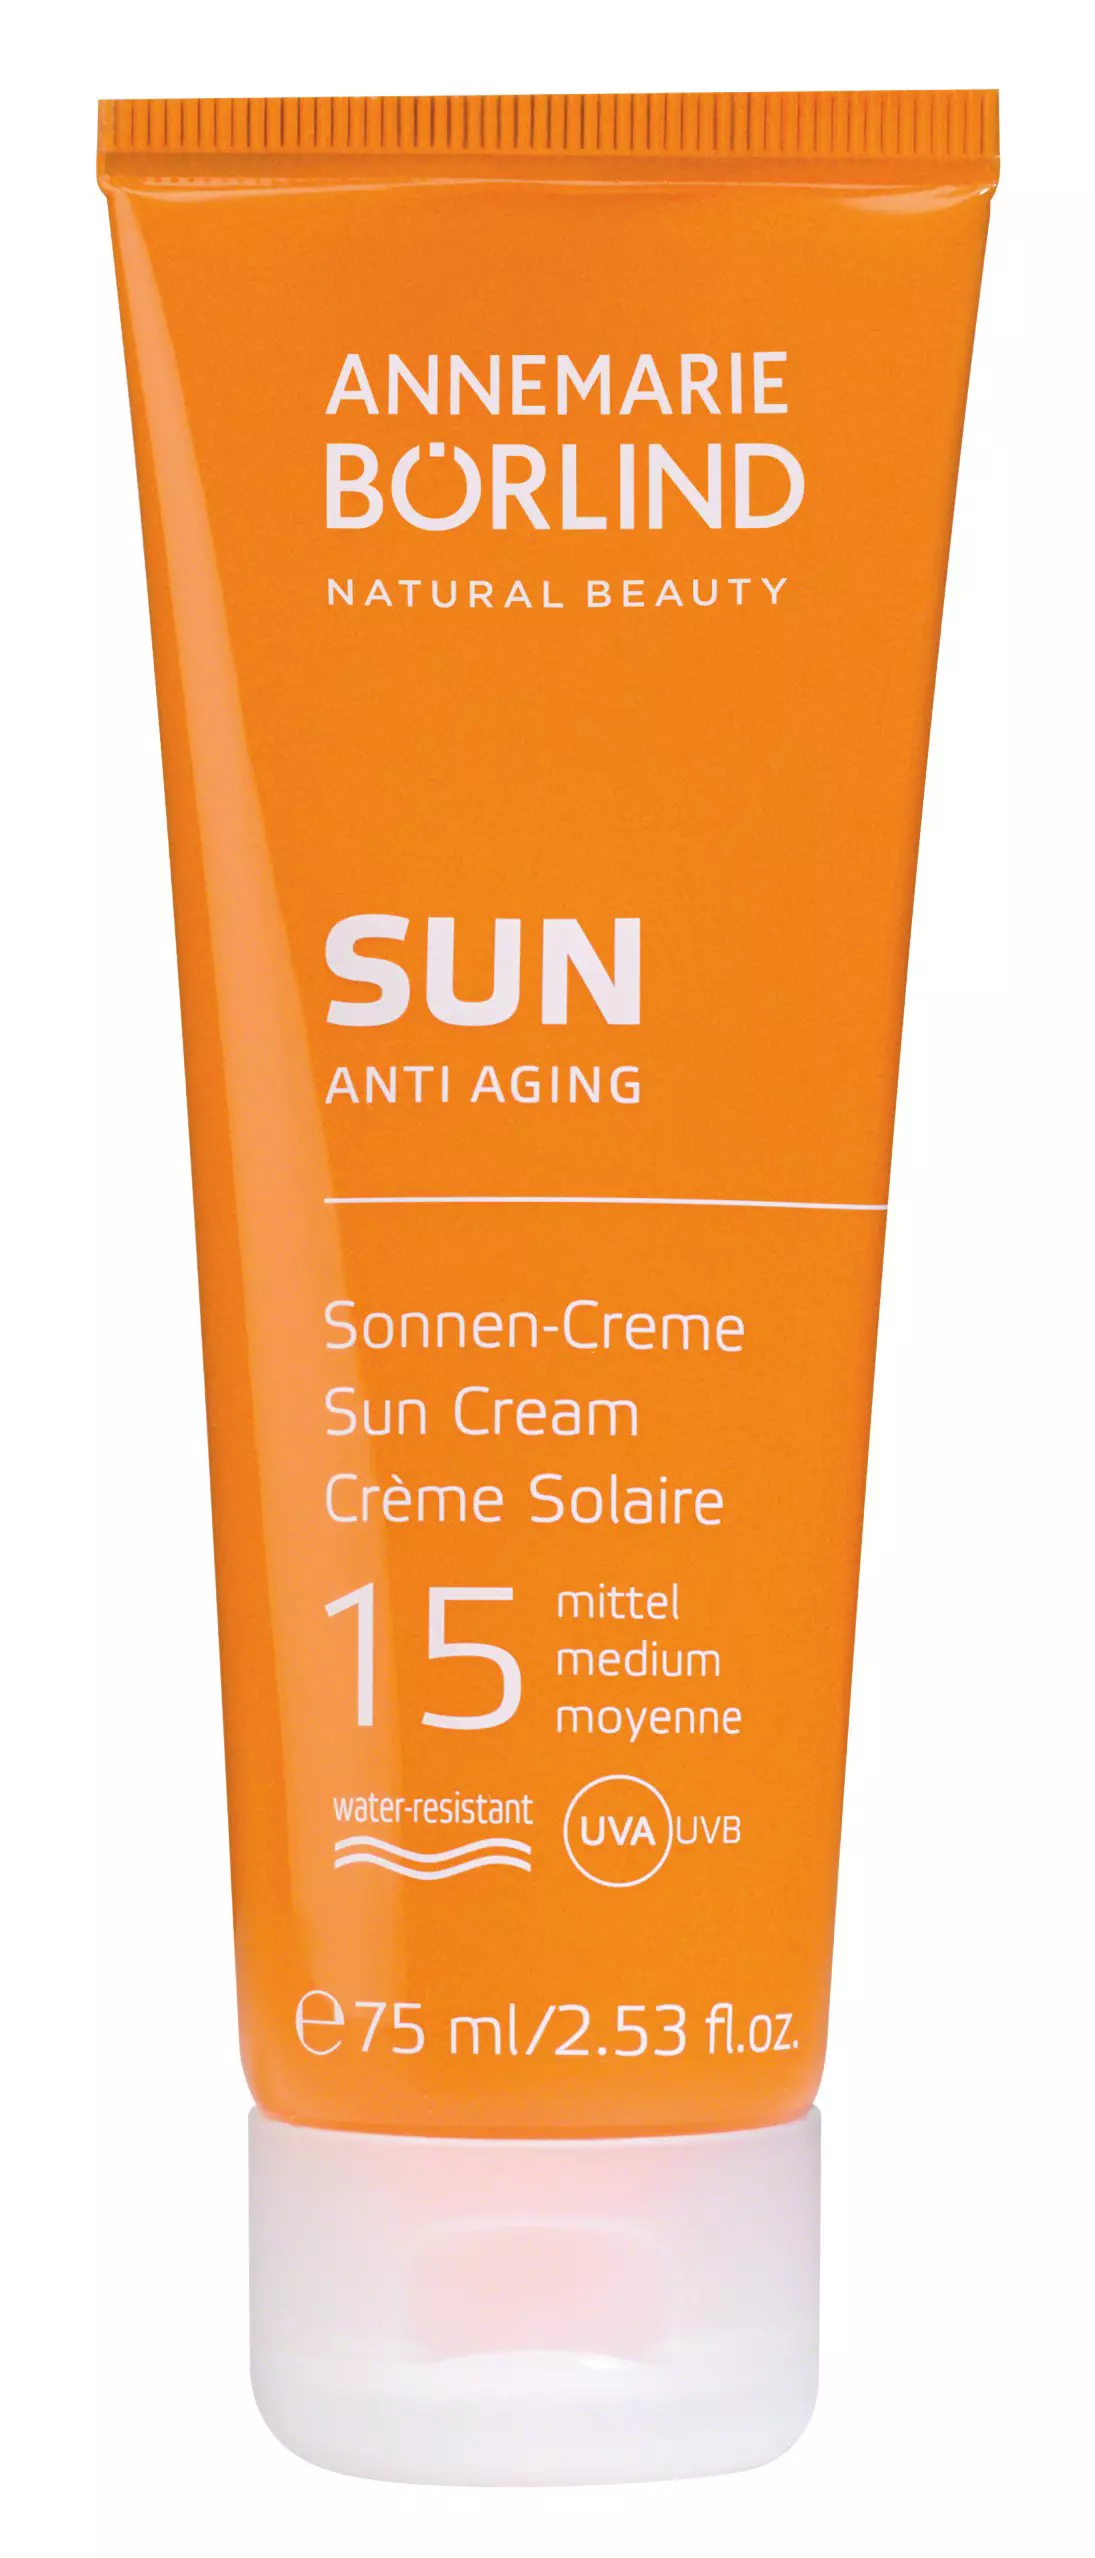 Annemarie Börlind Anti Aging Sun Cream